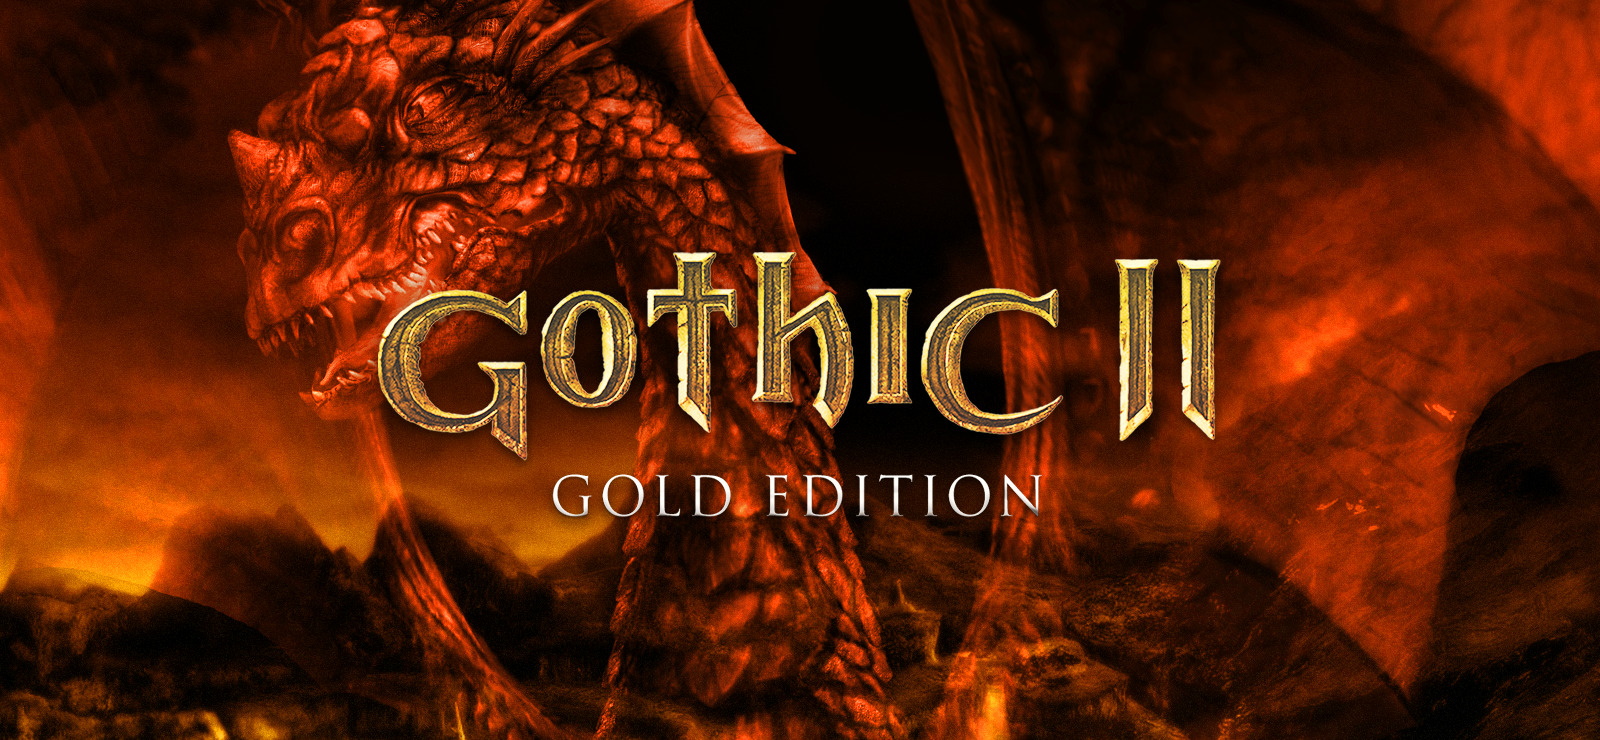 Nhận ngay 75% giảm giá cho Gothic 2 Gold Edition trên GOG.COM! Những trang bị độc đáo và phong cách chơi game hấp dẫn của tựa game này sẽ khiến bạn mê mẩn. Hãy xem hình ảnh để cập nhật thông tin mới nhất!